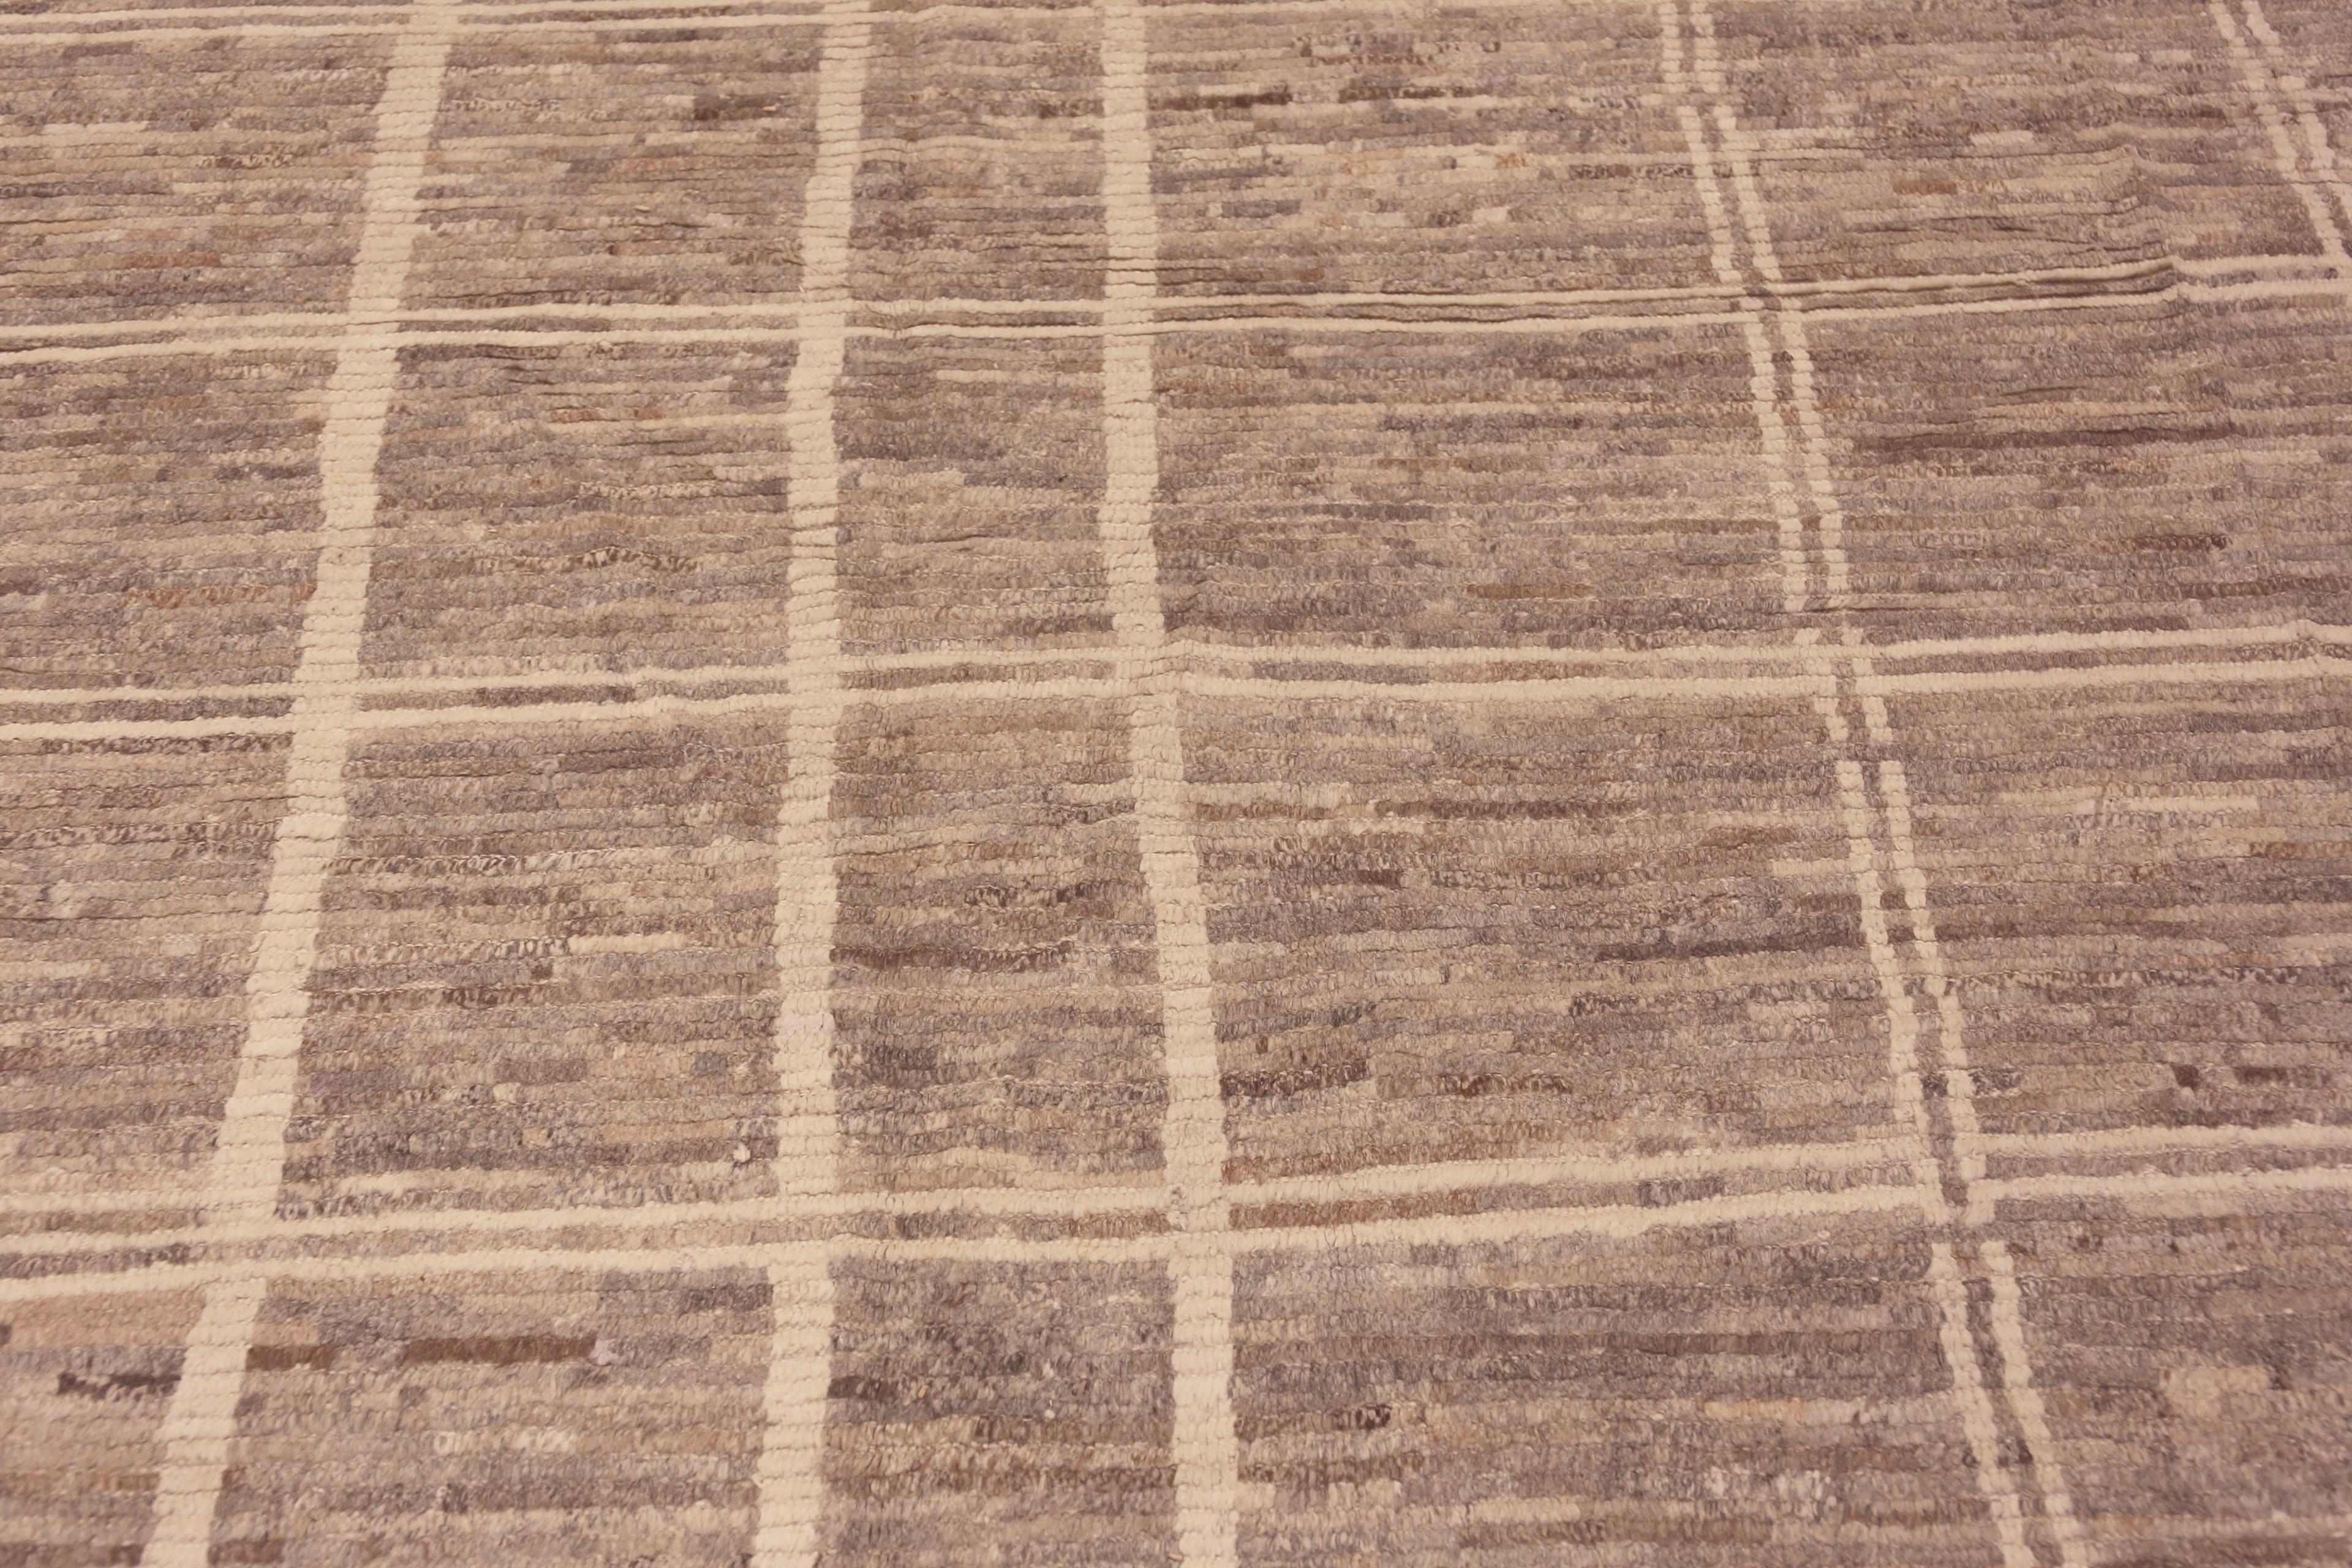 Magnifique tapis décoratif de grande taille de couleur gris terreux Tribal Geometric Design Modern Contemporary Rug, Country of Origin : Asie centrale, Circa Date : Tapis moderne